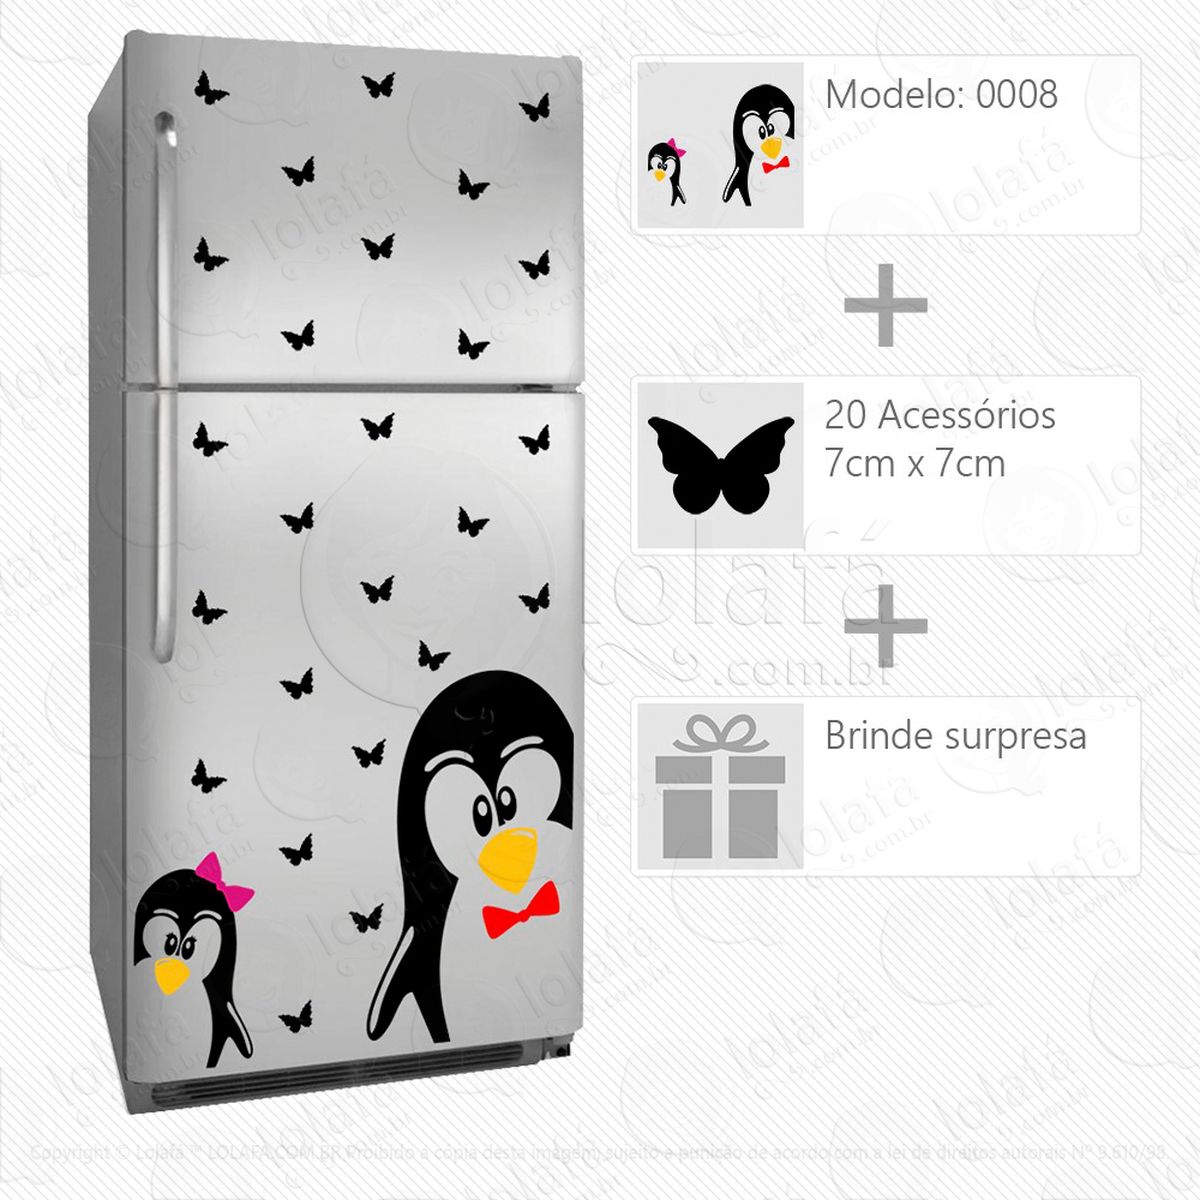 pinguins adesivo para geladeira e frigobar - mod:8